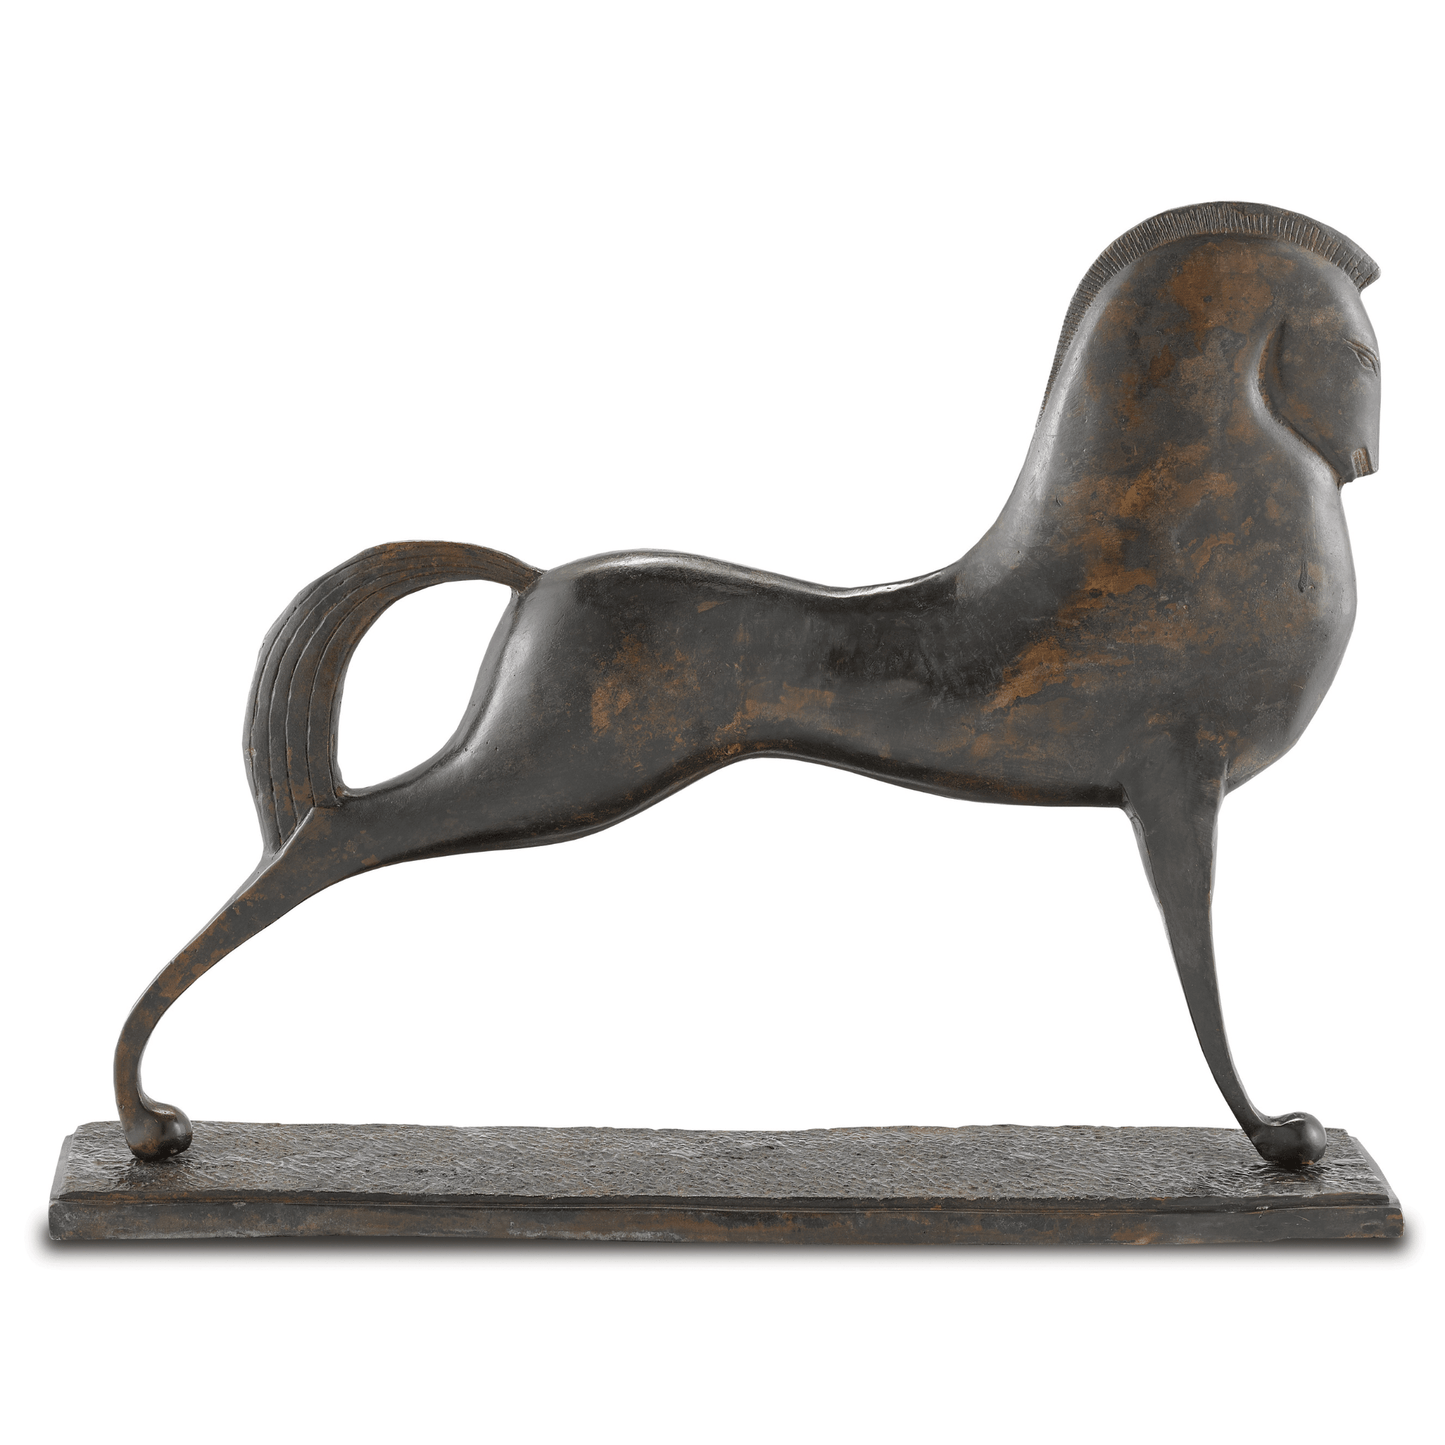 Assyrian Bronze Horse  H: 14.75" W: 19.5" D: 4.75"